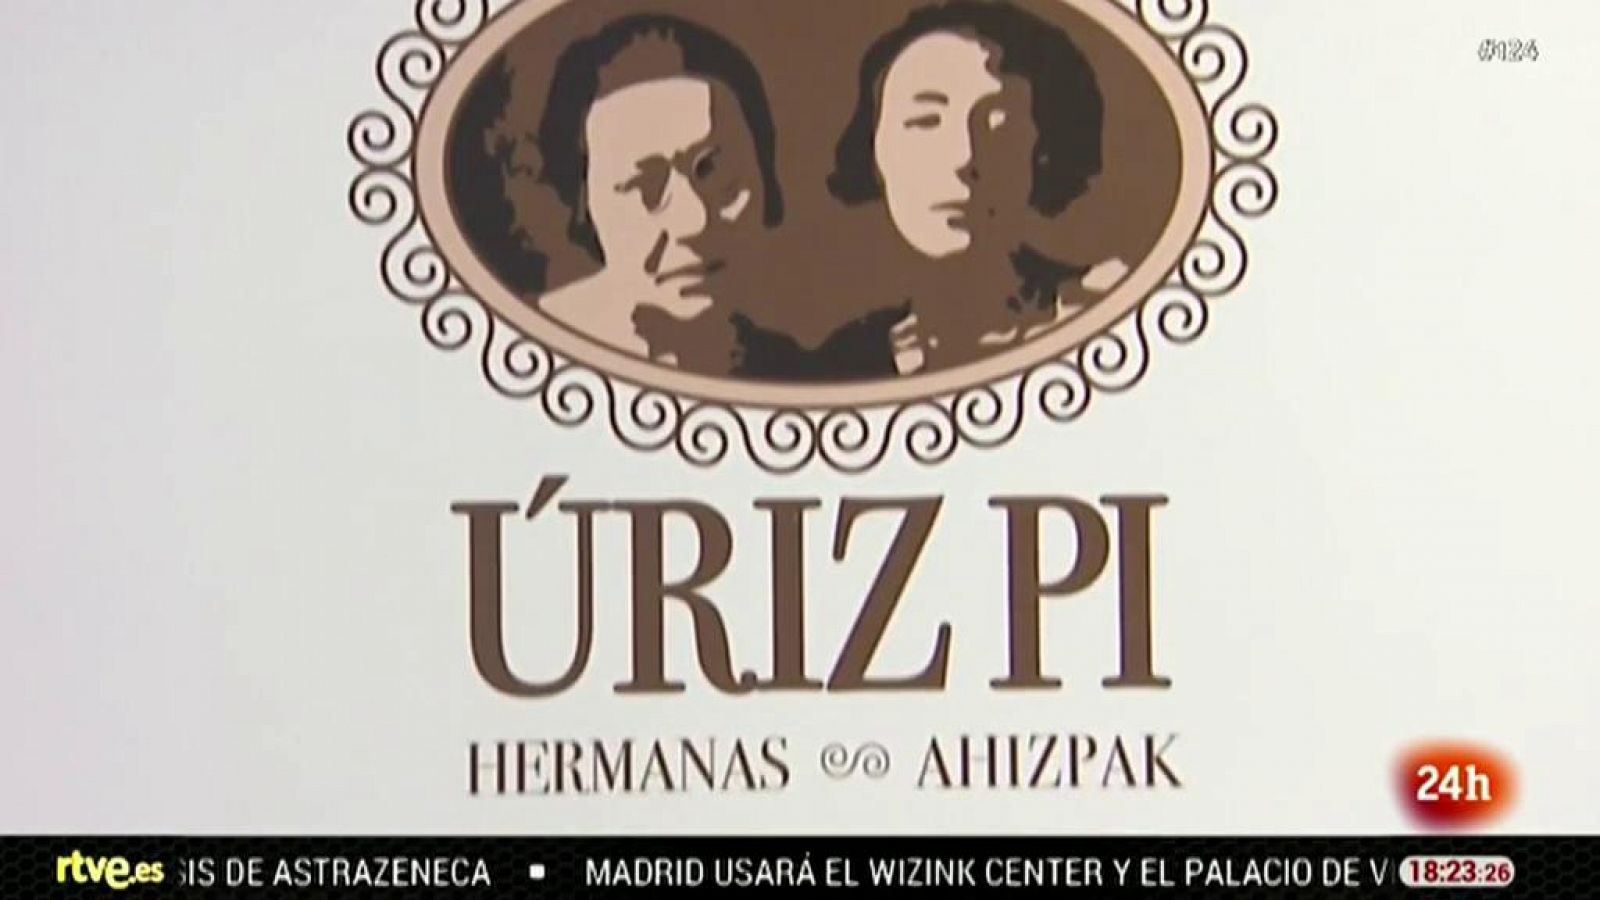 Una exposición recuerda a las hermanas Uriz Pi, pioneras de la defensa de mujeres y menores en Navarra